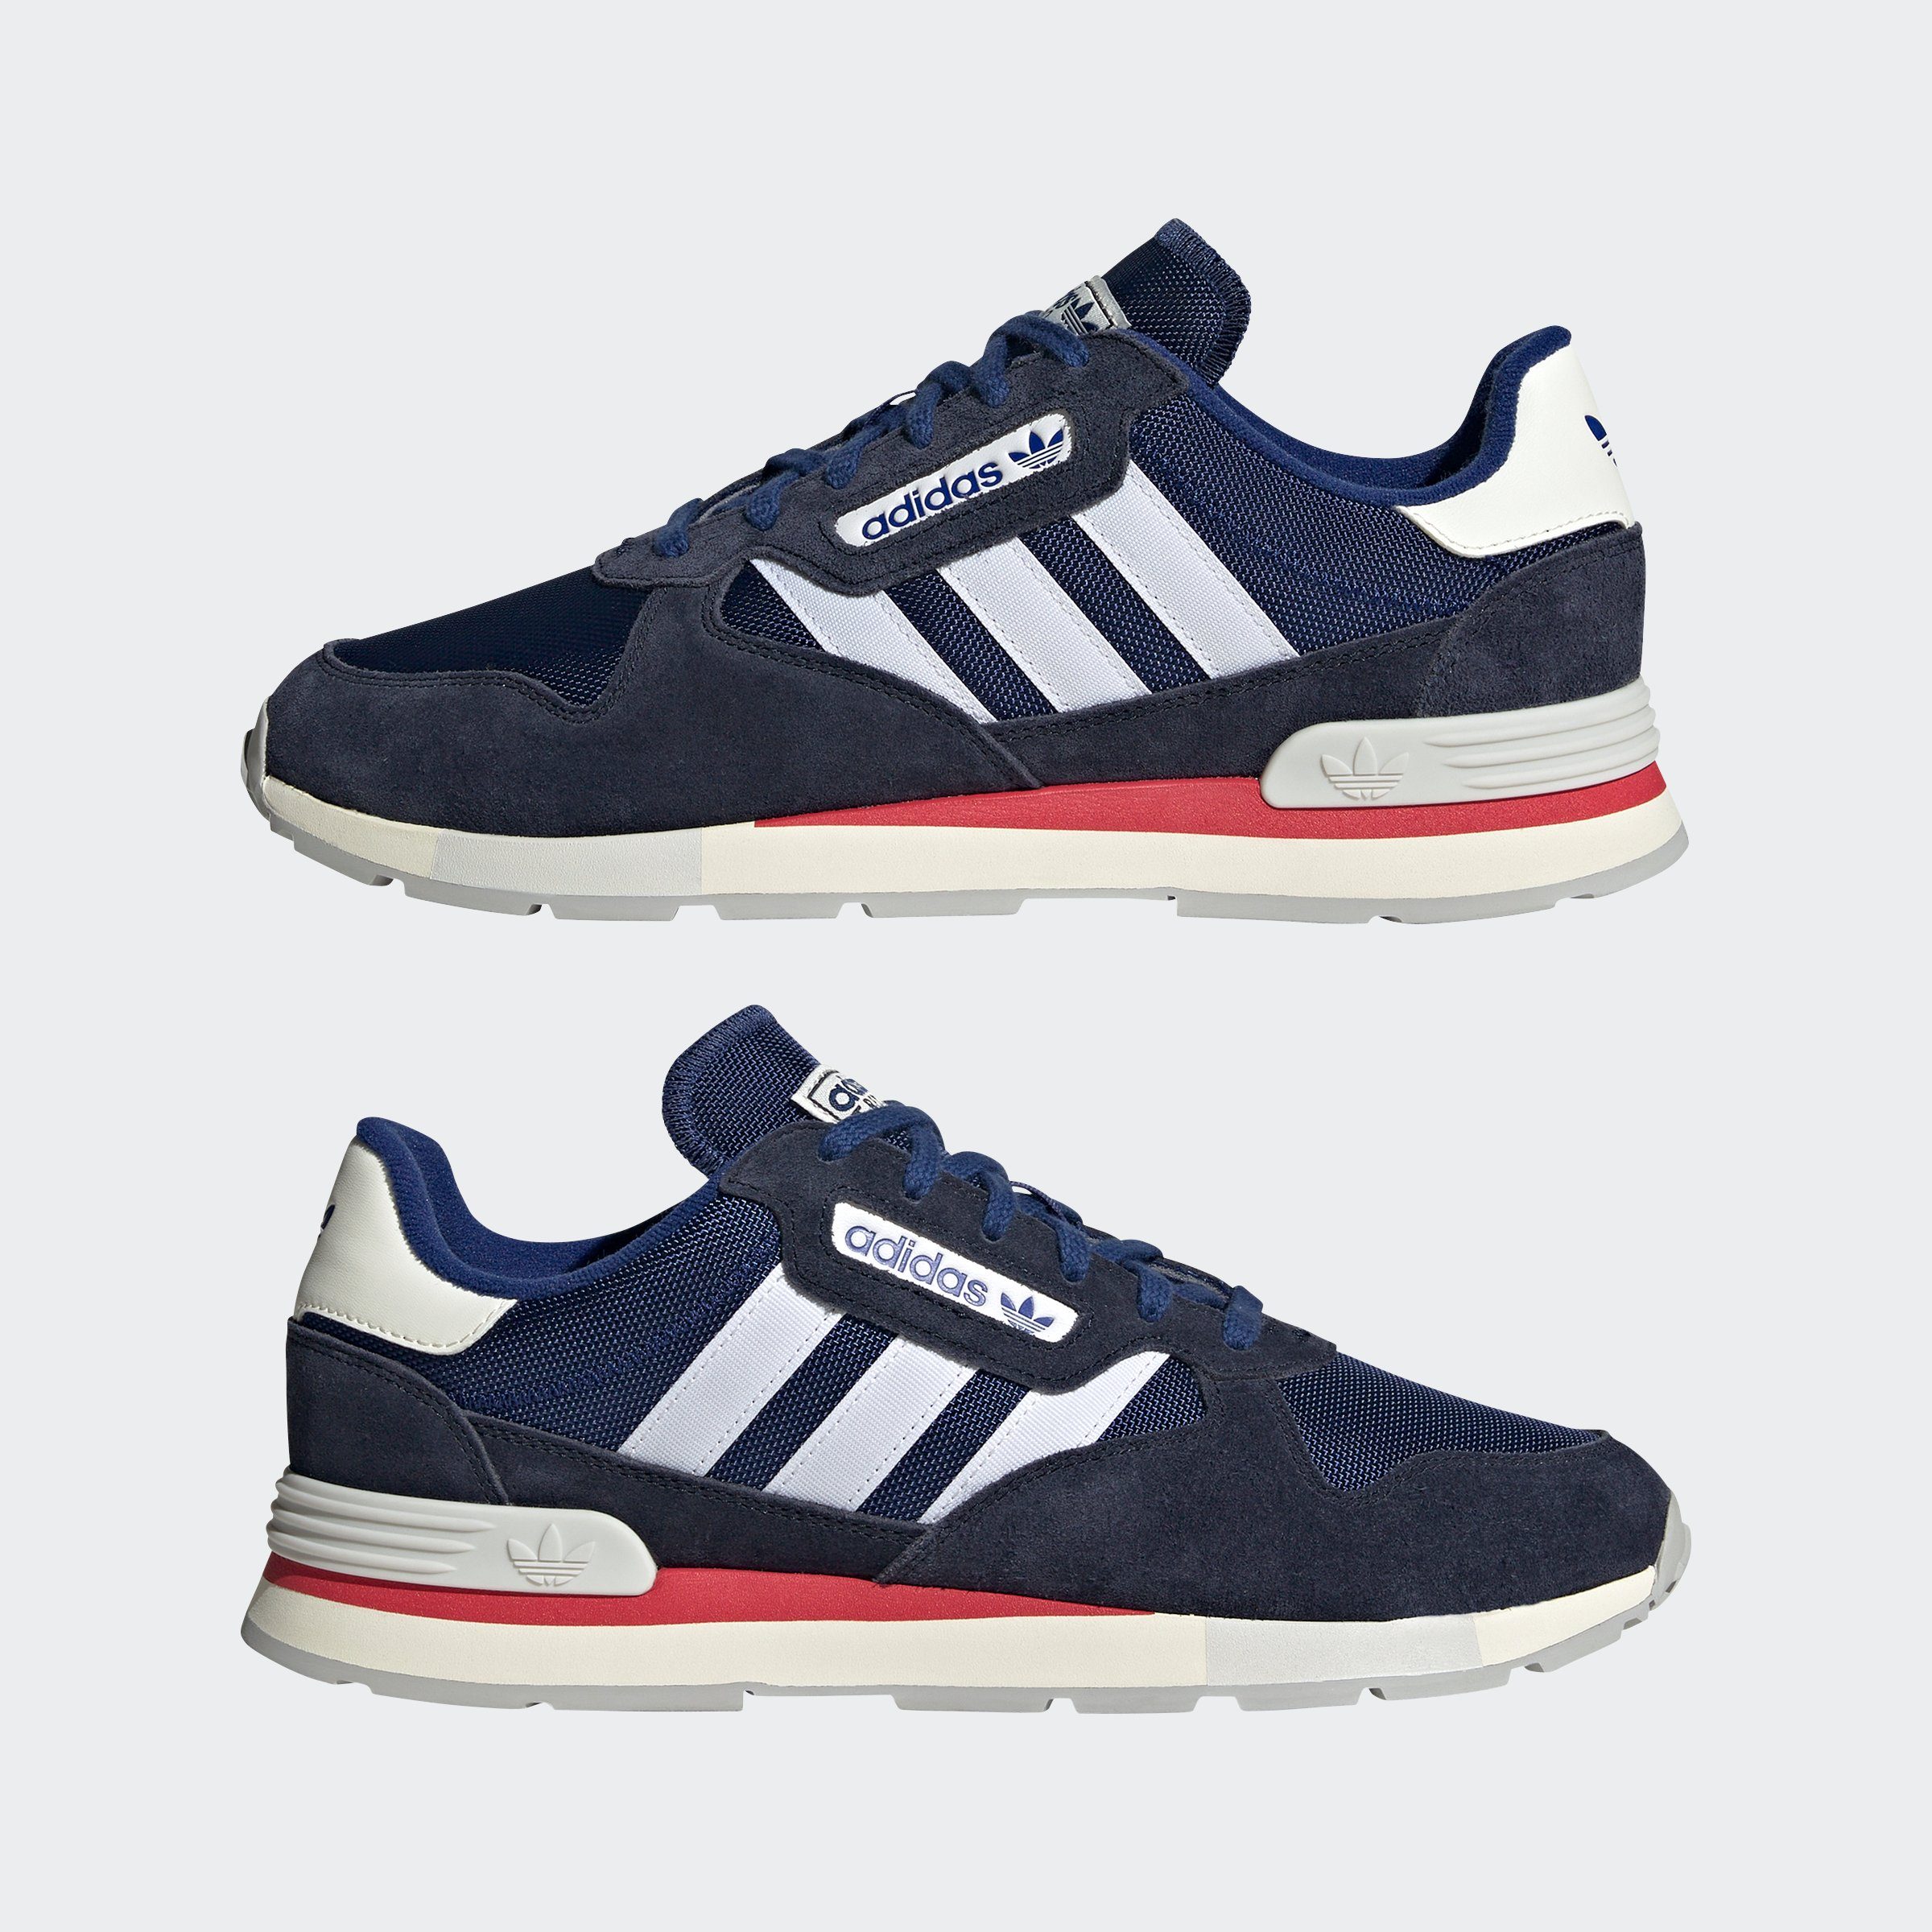 Originals blauweissblau Sneaker TREZIOD adidas 2